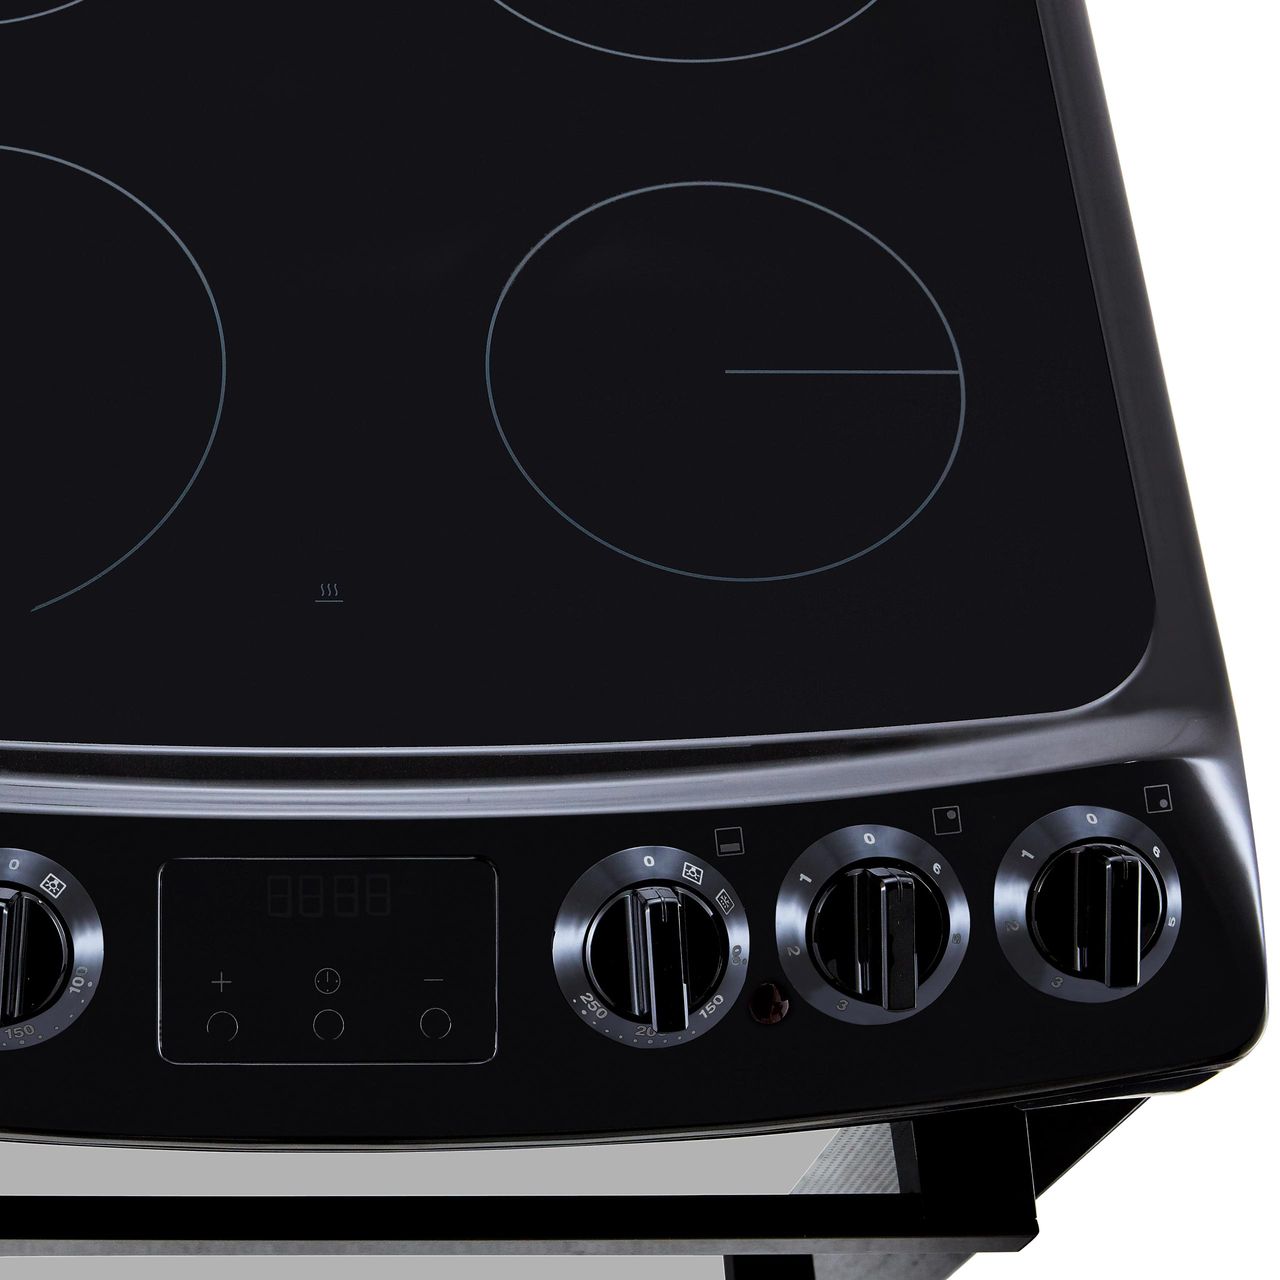 Buy ZANUSSI ZCV46250BA 55 cm Electric Cooker - Black